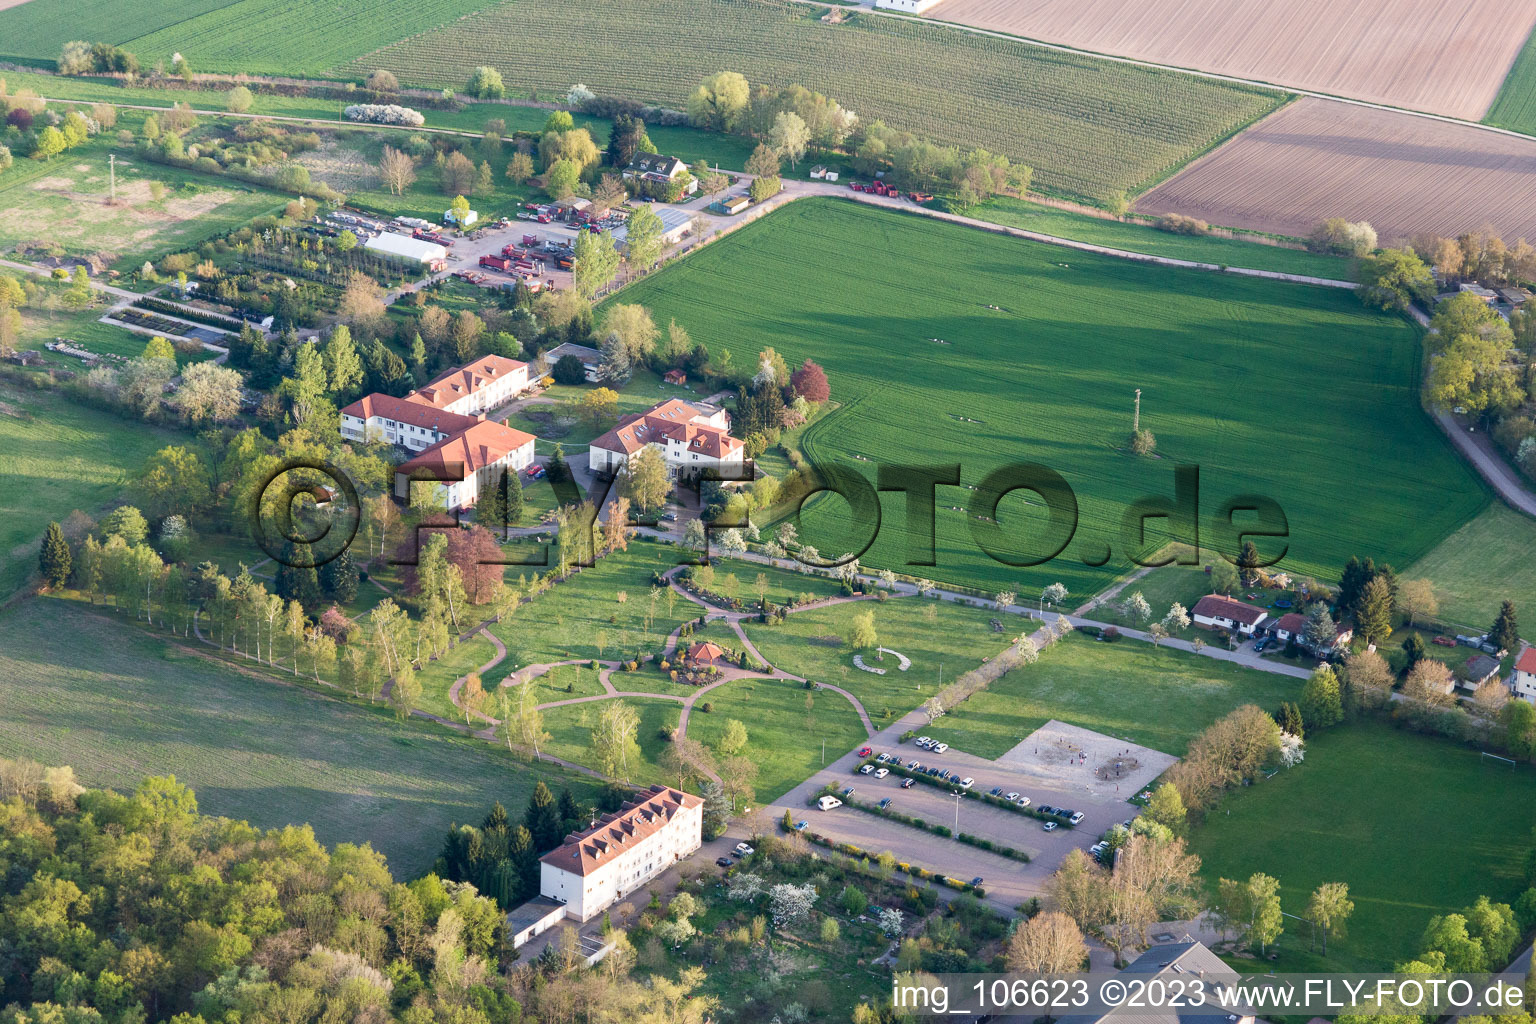 Luftaufnahme von Campus Lachen Diakonissen im Ortsteil Speyerdorf in Neustadt an der Weinstraße im Bundesland Rheinland-Pfalz, Deutschland